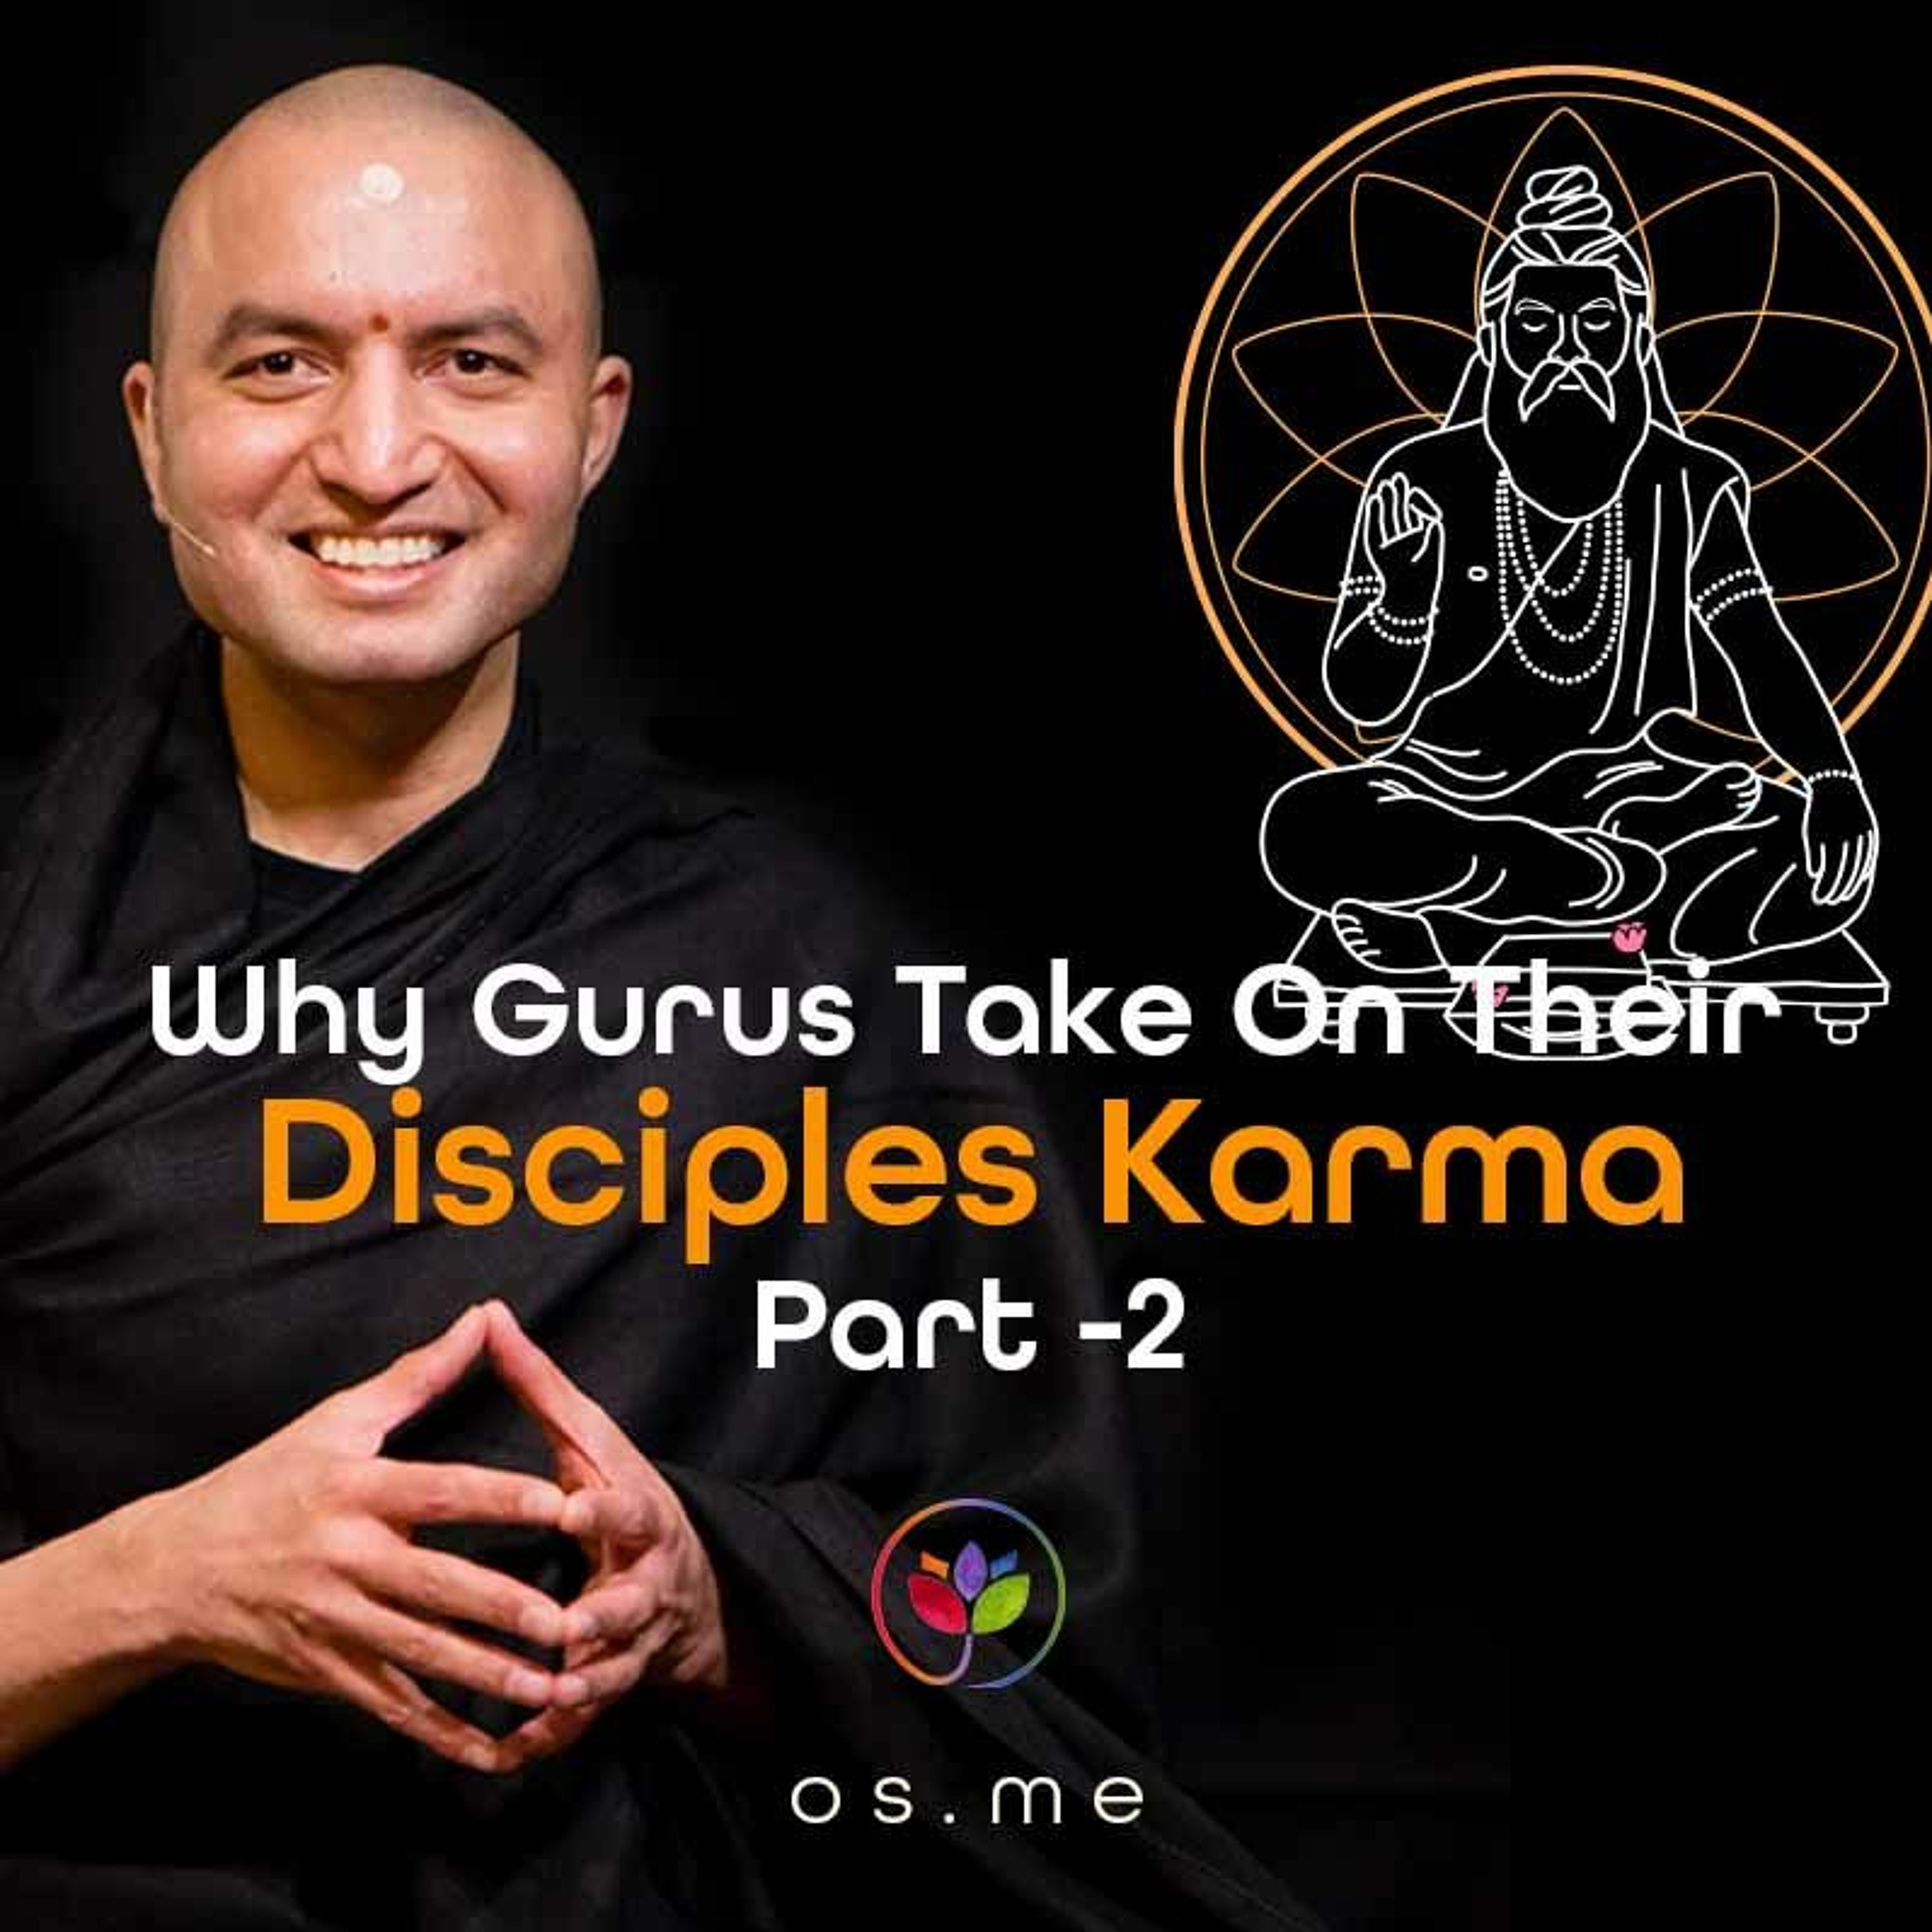 Why Gurus Take on Their Disciples' Karma Part 2 - [Hindi ]